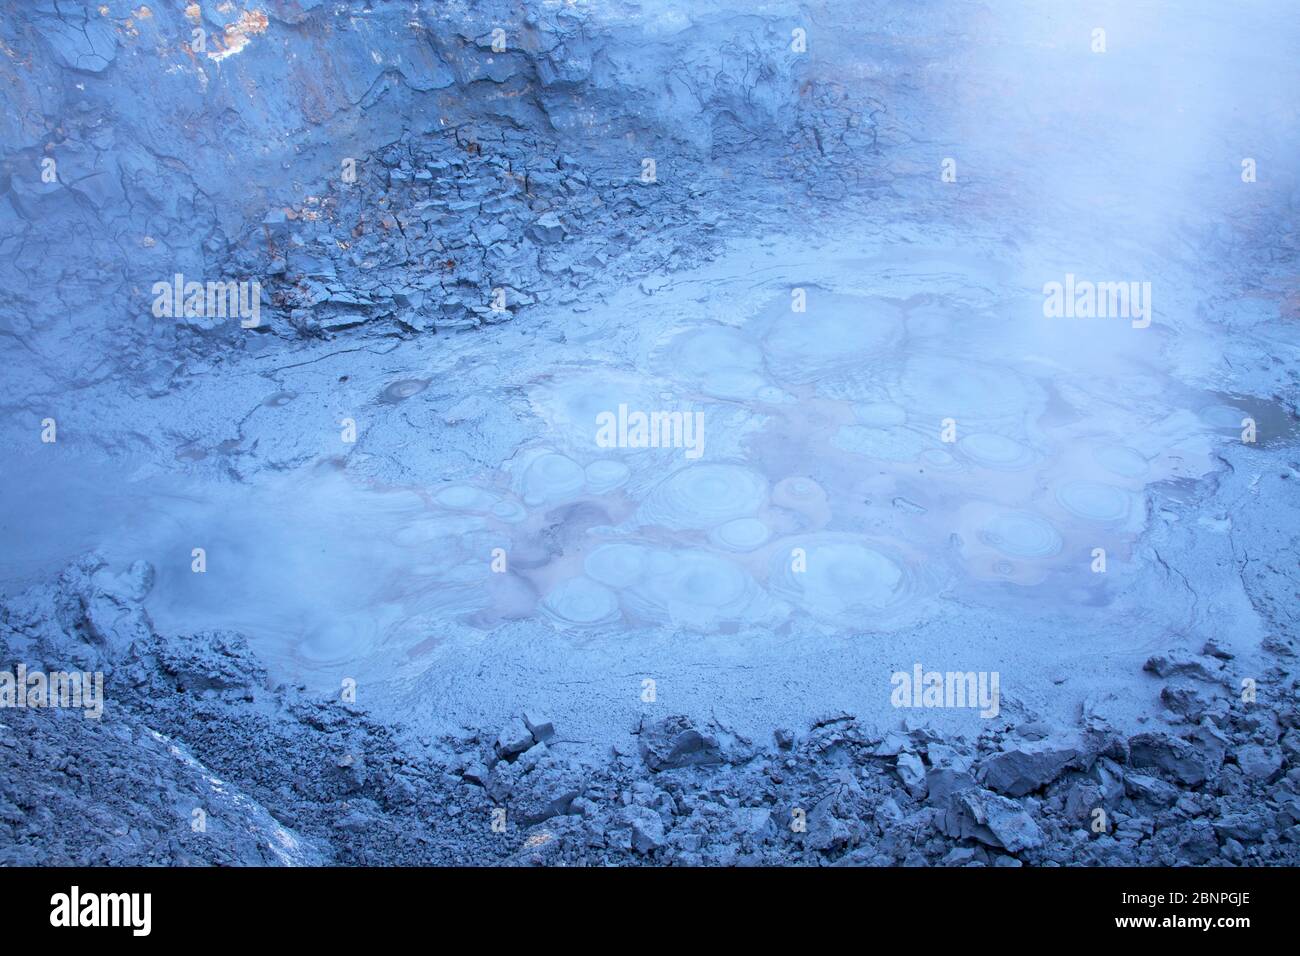 The 'Fulipollur' mud pot in the 'Austurengjar' high-temperature area near Krisuvik on the Reykjanes peninsula. Stock Photo